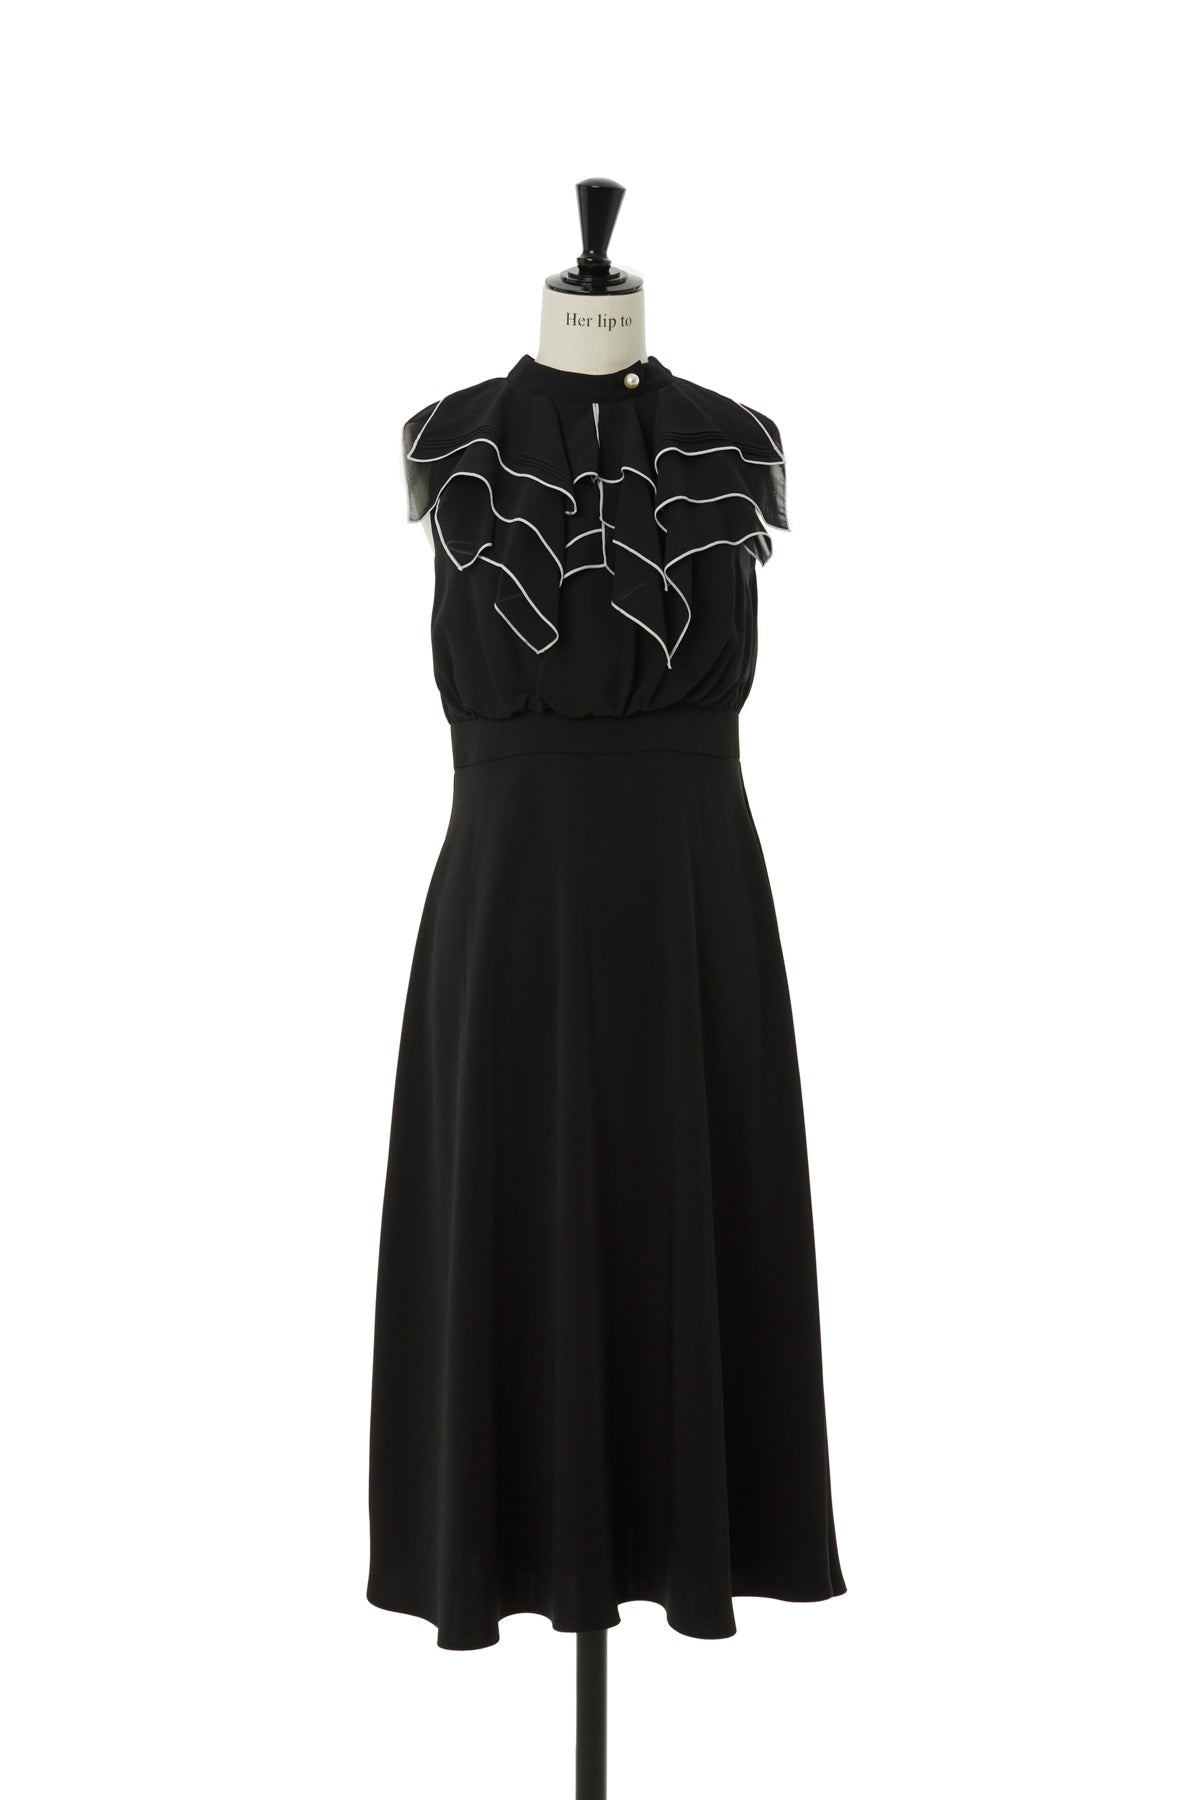 herlipto Modern Classic Sleeveless Dress